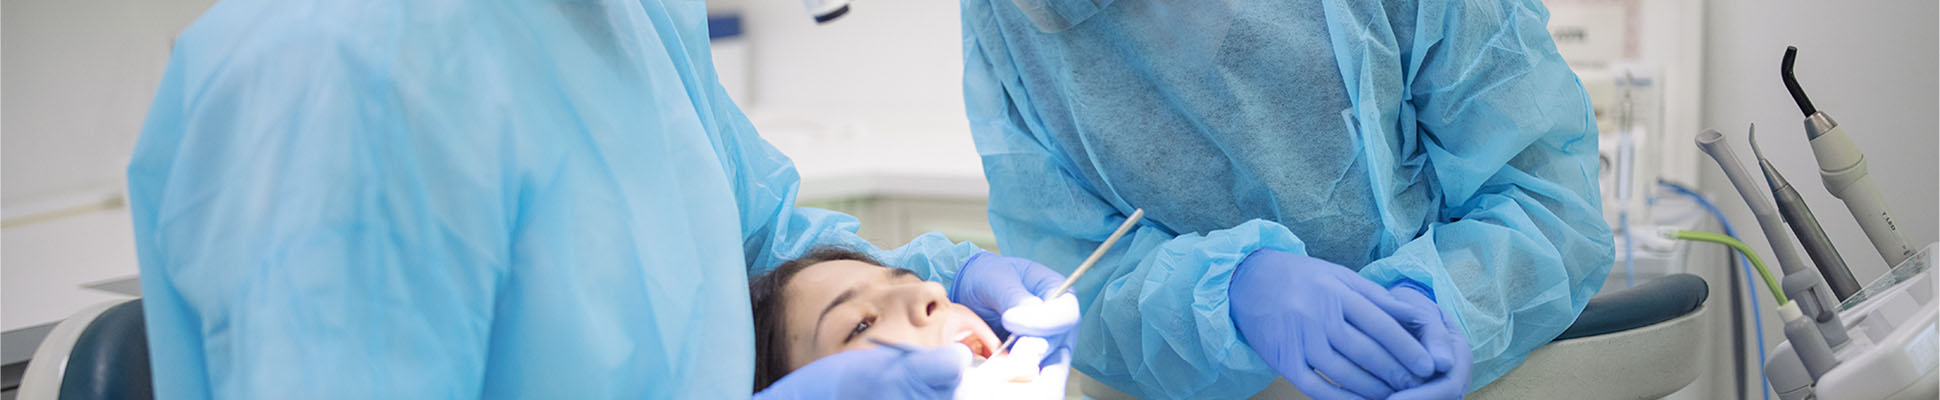 Chirurgiens-dentistes : nos offres et conseils dédiés